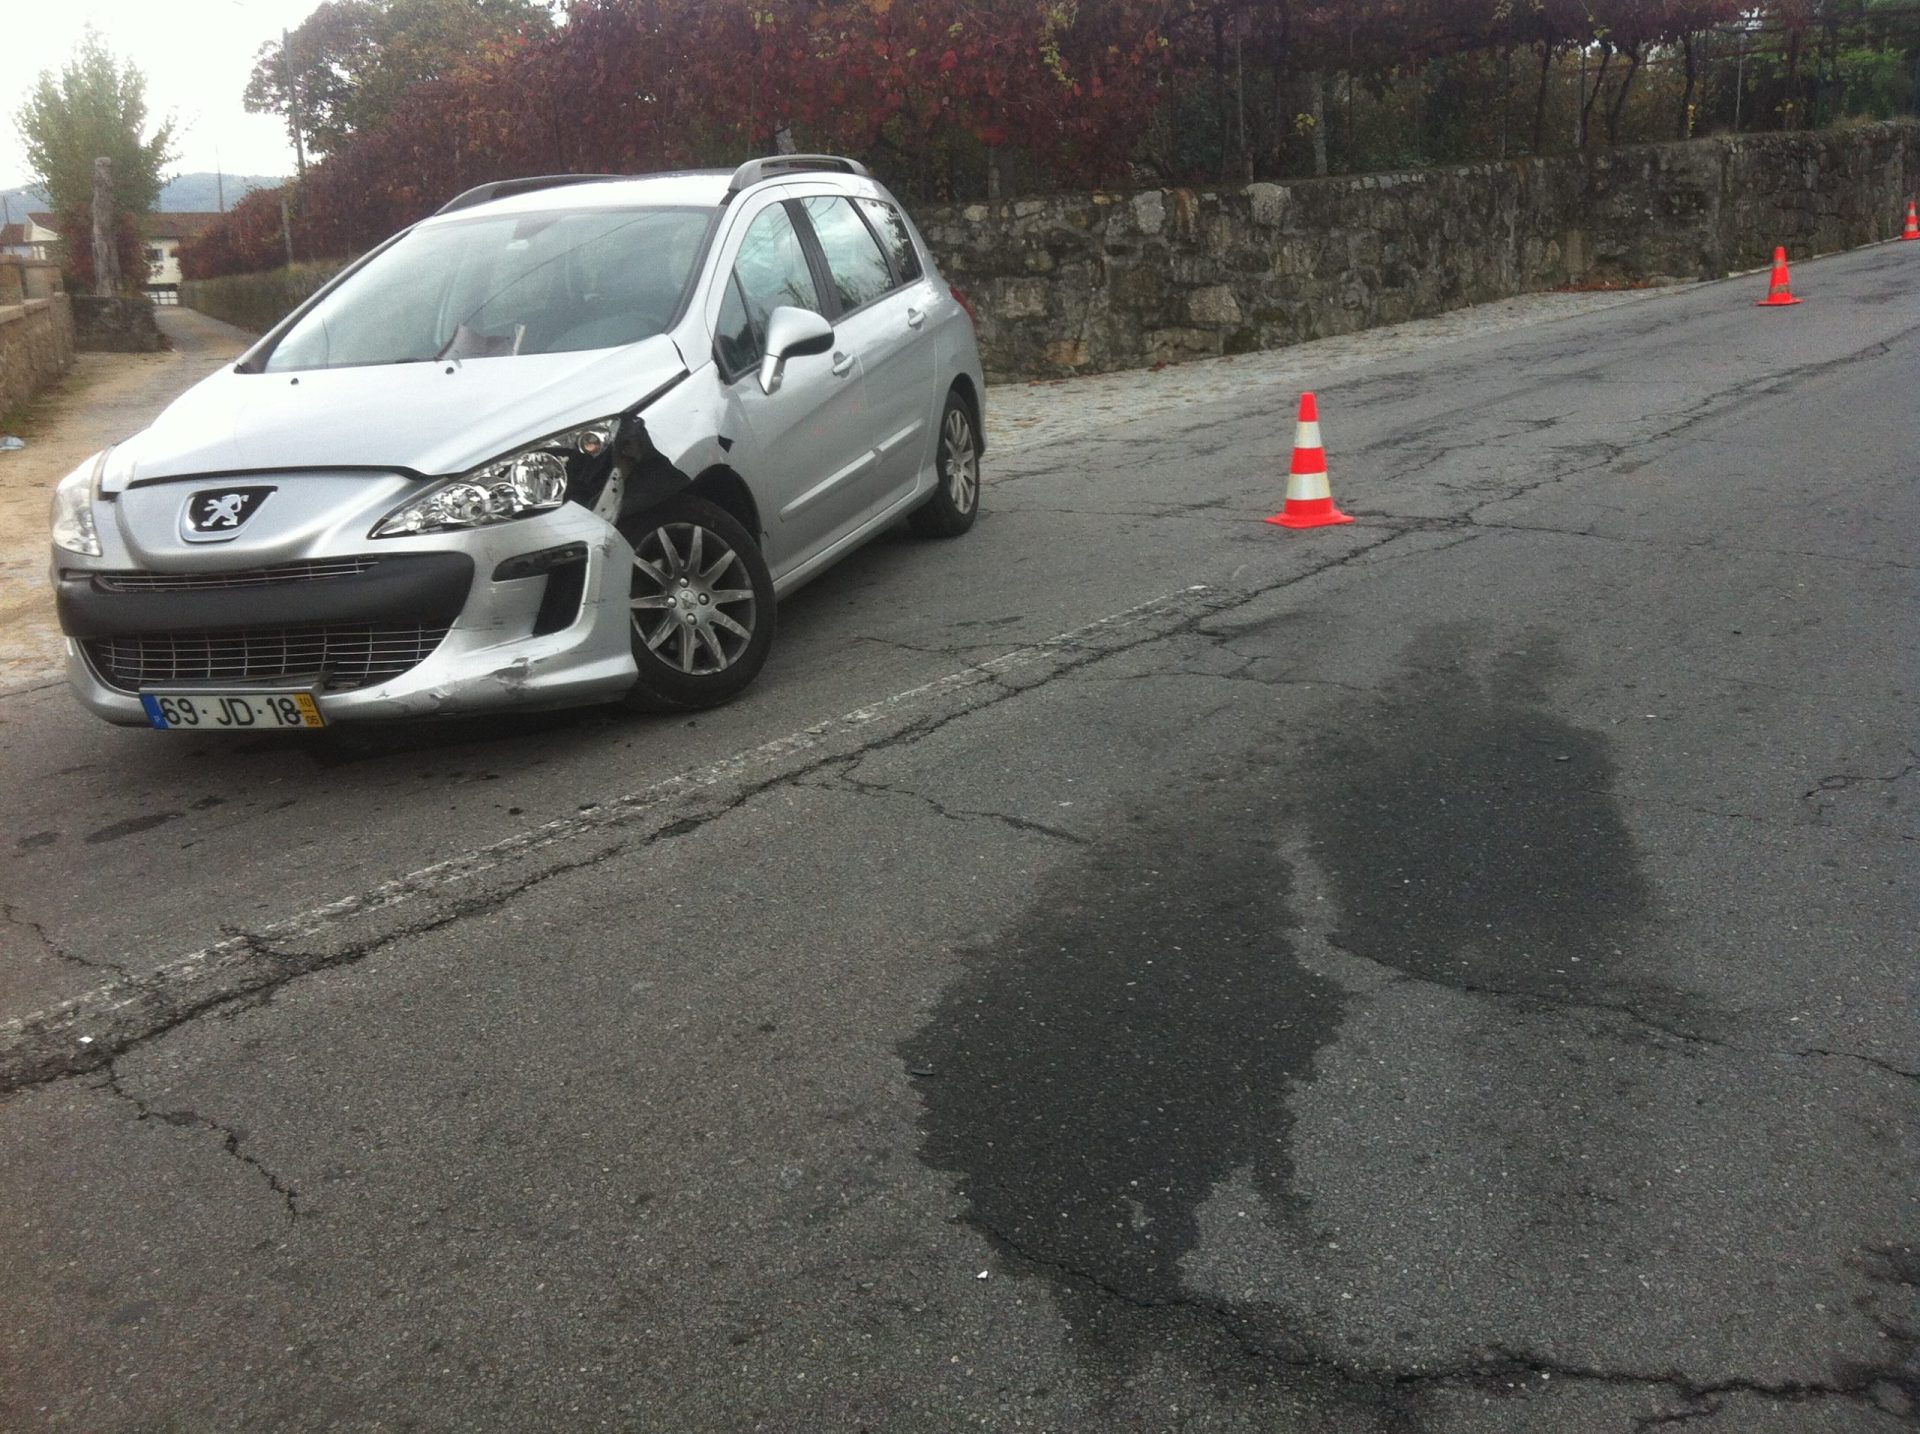 Enfermeiros feridos em colisão rodoviária em Braga